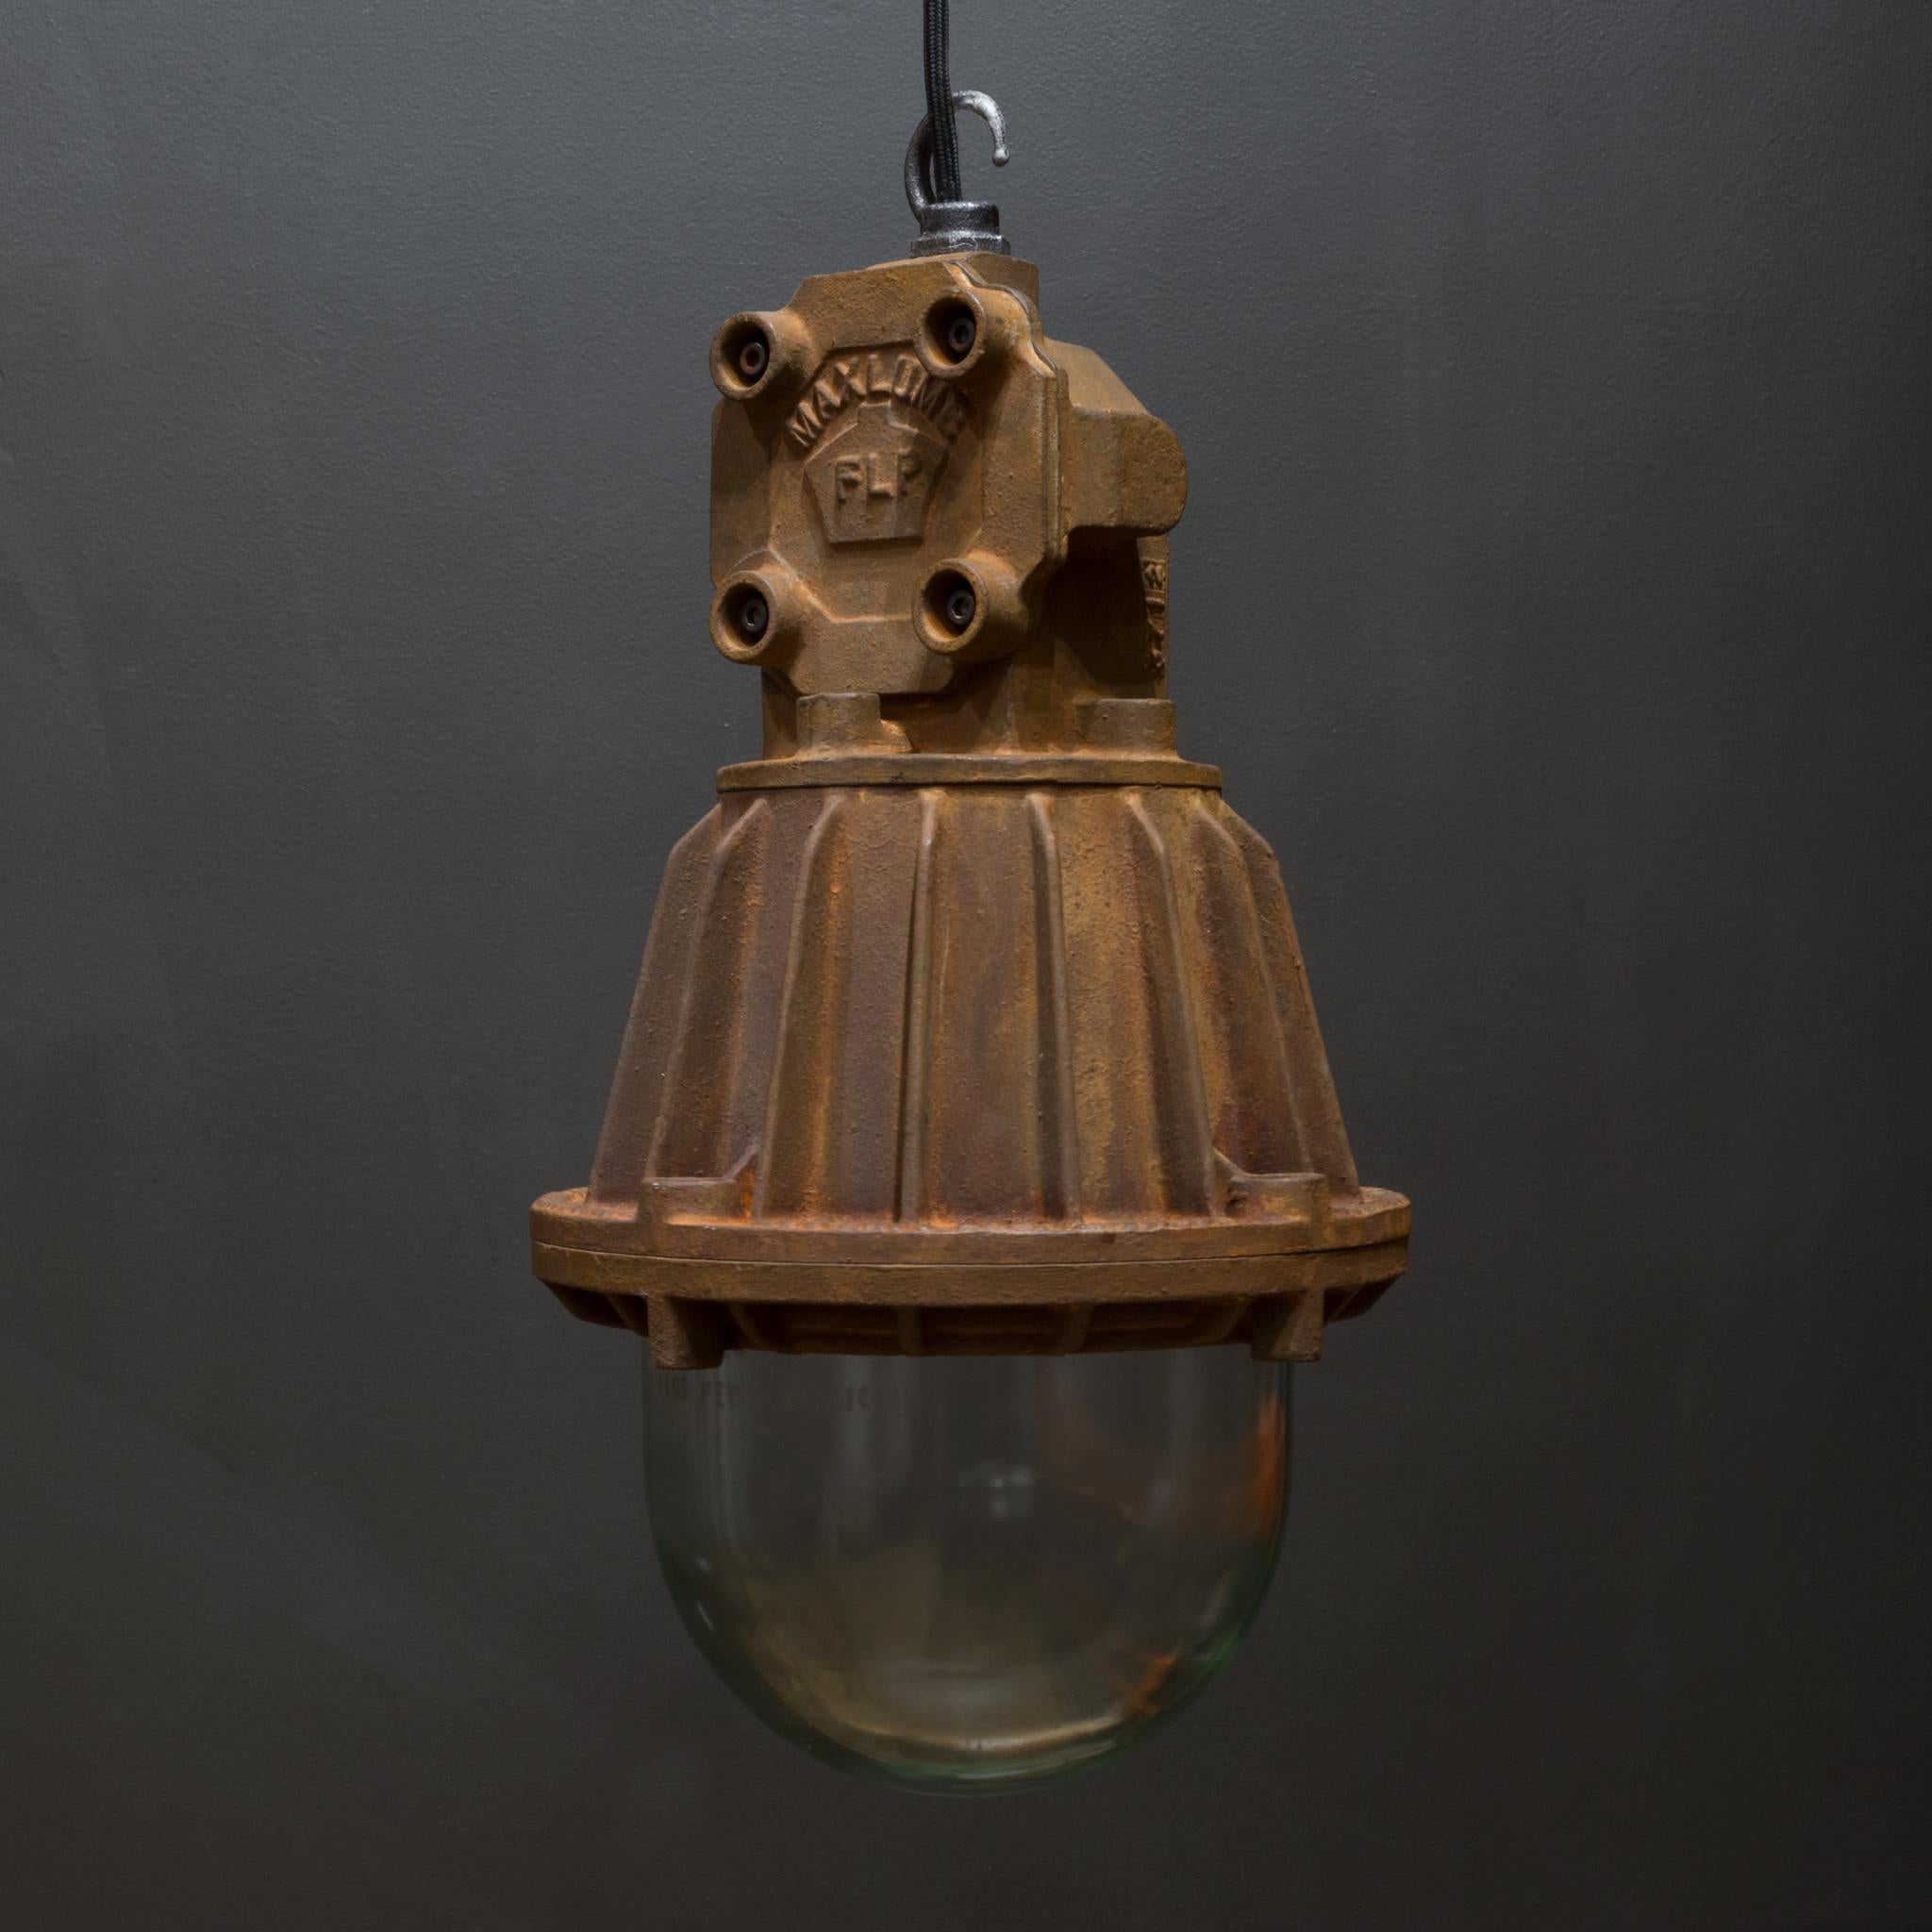 À propos de

Une lampe suspendue industrielle anglaise originale en acier moulé lourd avec un dôme en verre. Fabriqué au Royaume-Uni par Maxlume, il a été conçu pour être ignifugé car il était suspendu dans des usines hautement inflammables.

